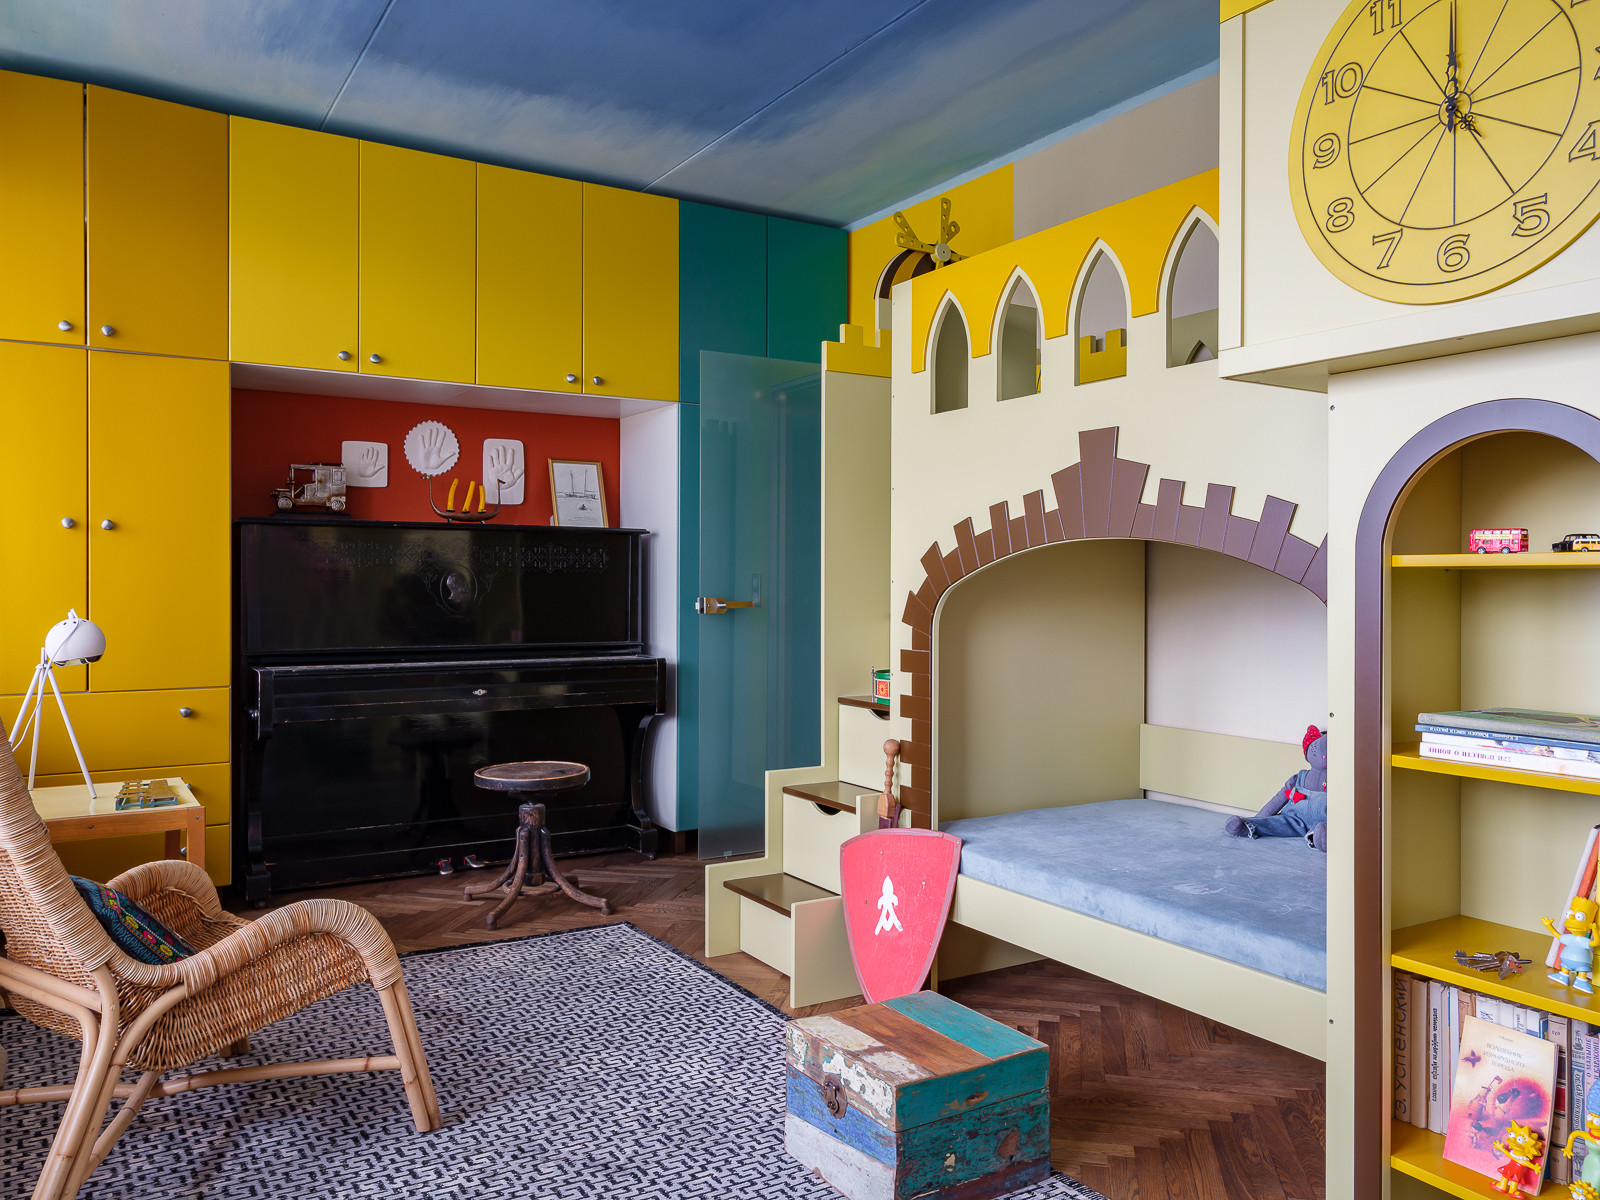 Дизайн детской для девочки и мальчика в одной комнате